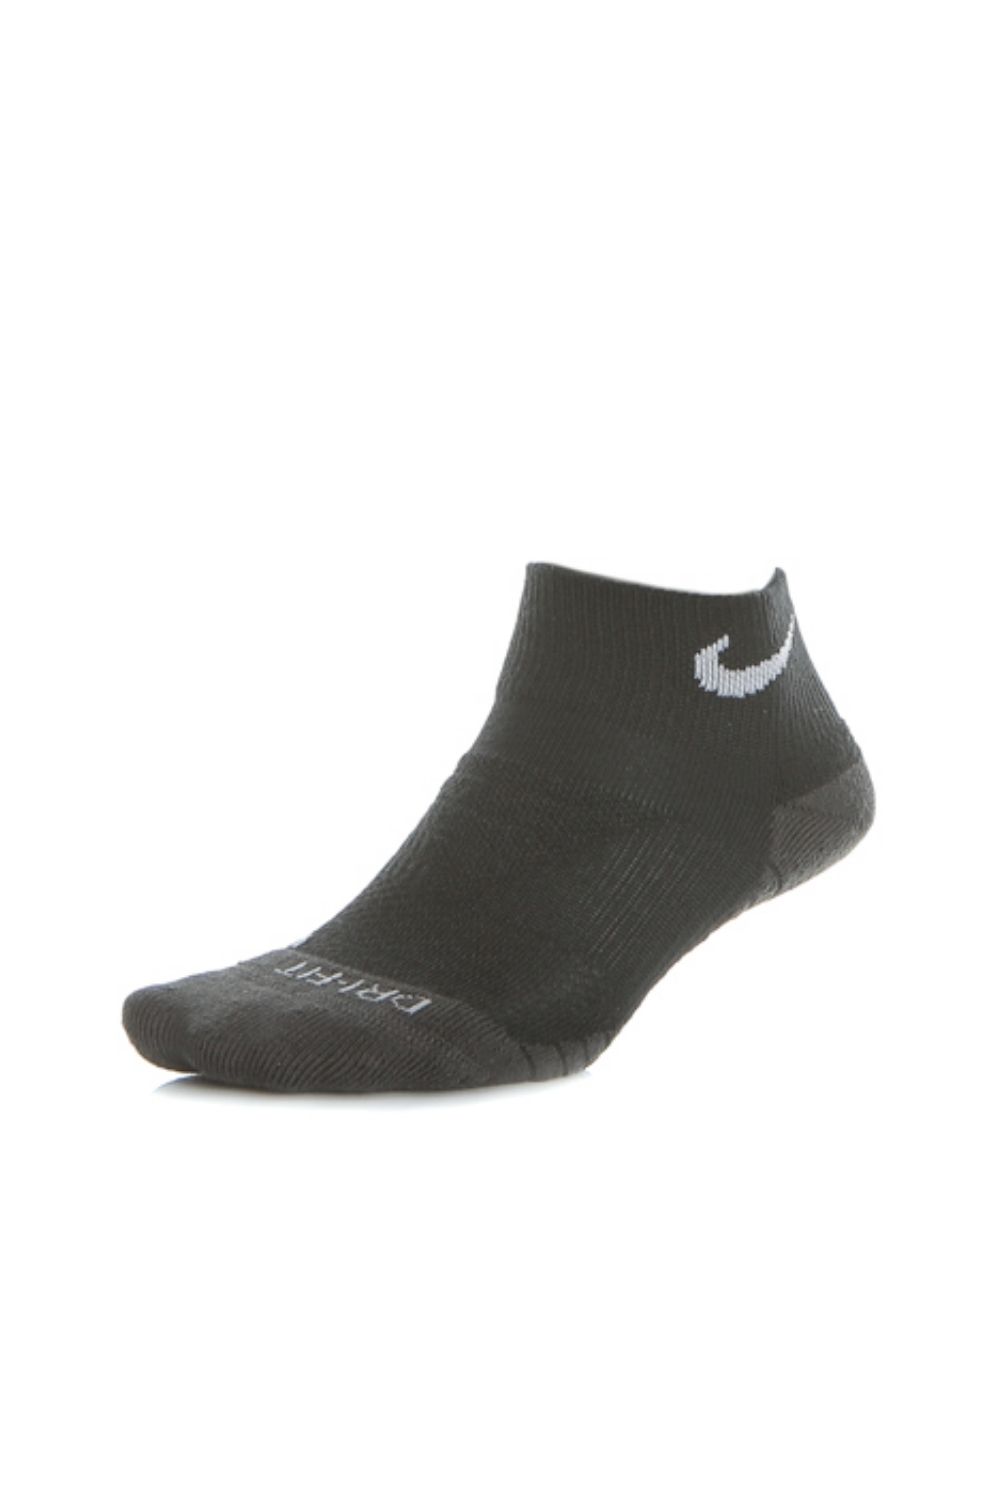 NIKE – Unisex κάλτσες NIKE EVRY MAX CUSH μαύρες 1539399.1-7180